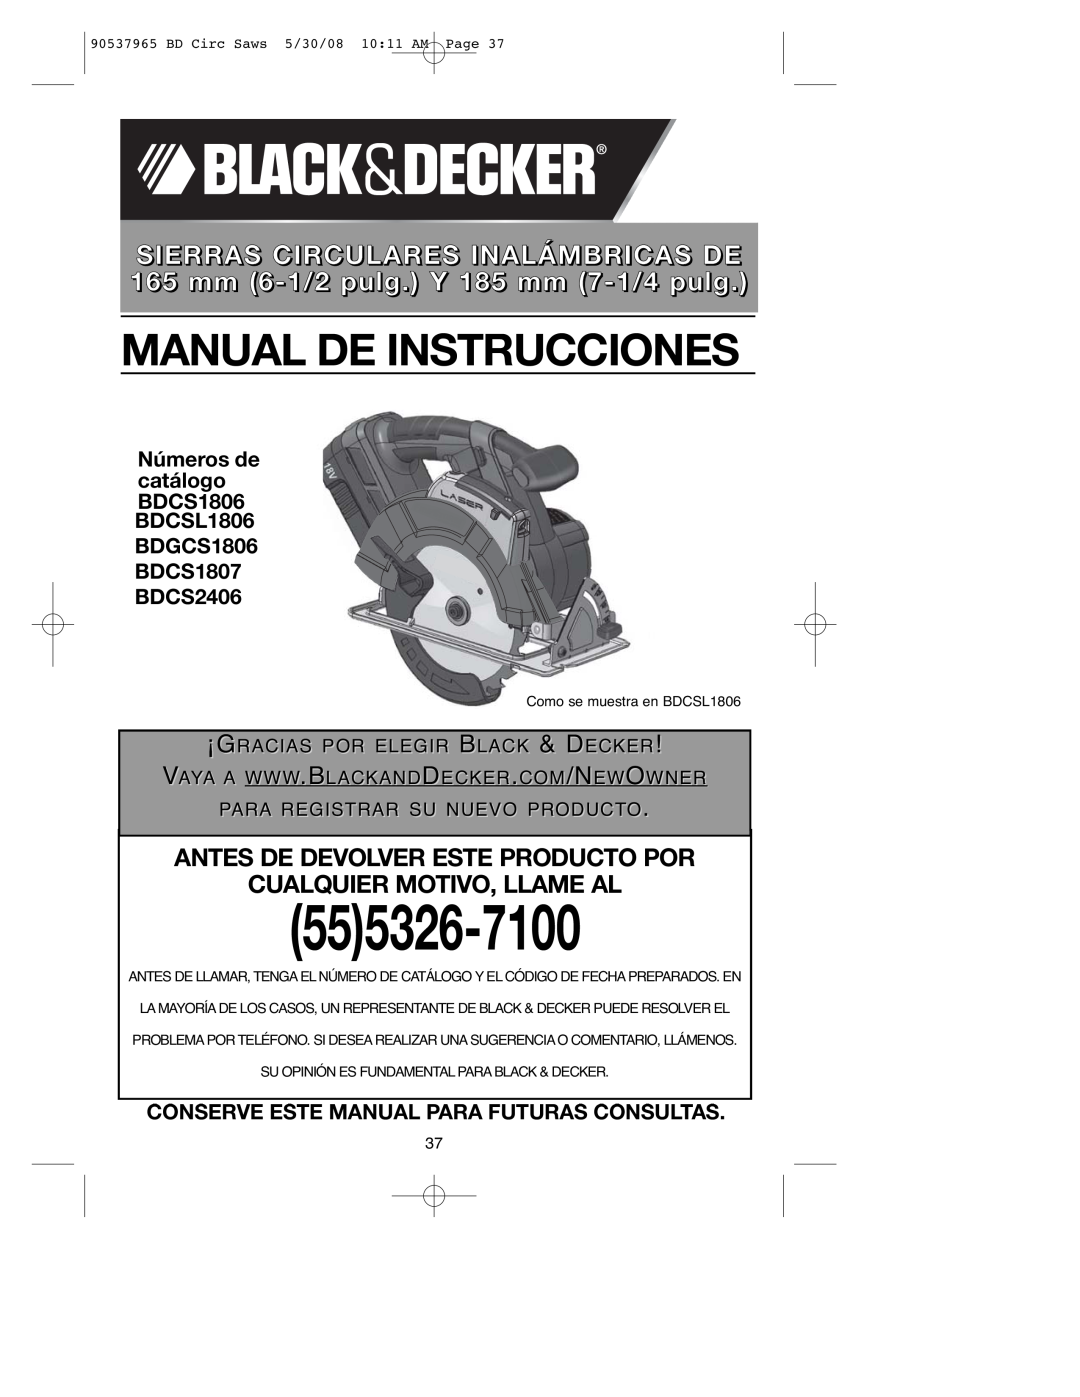 Black & Decker BDCS1806 Antes De Devolver Este Producto Por Cualquier Motivo, Llame Al, ¡Gracias Por Elegir Black & Decker 